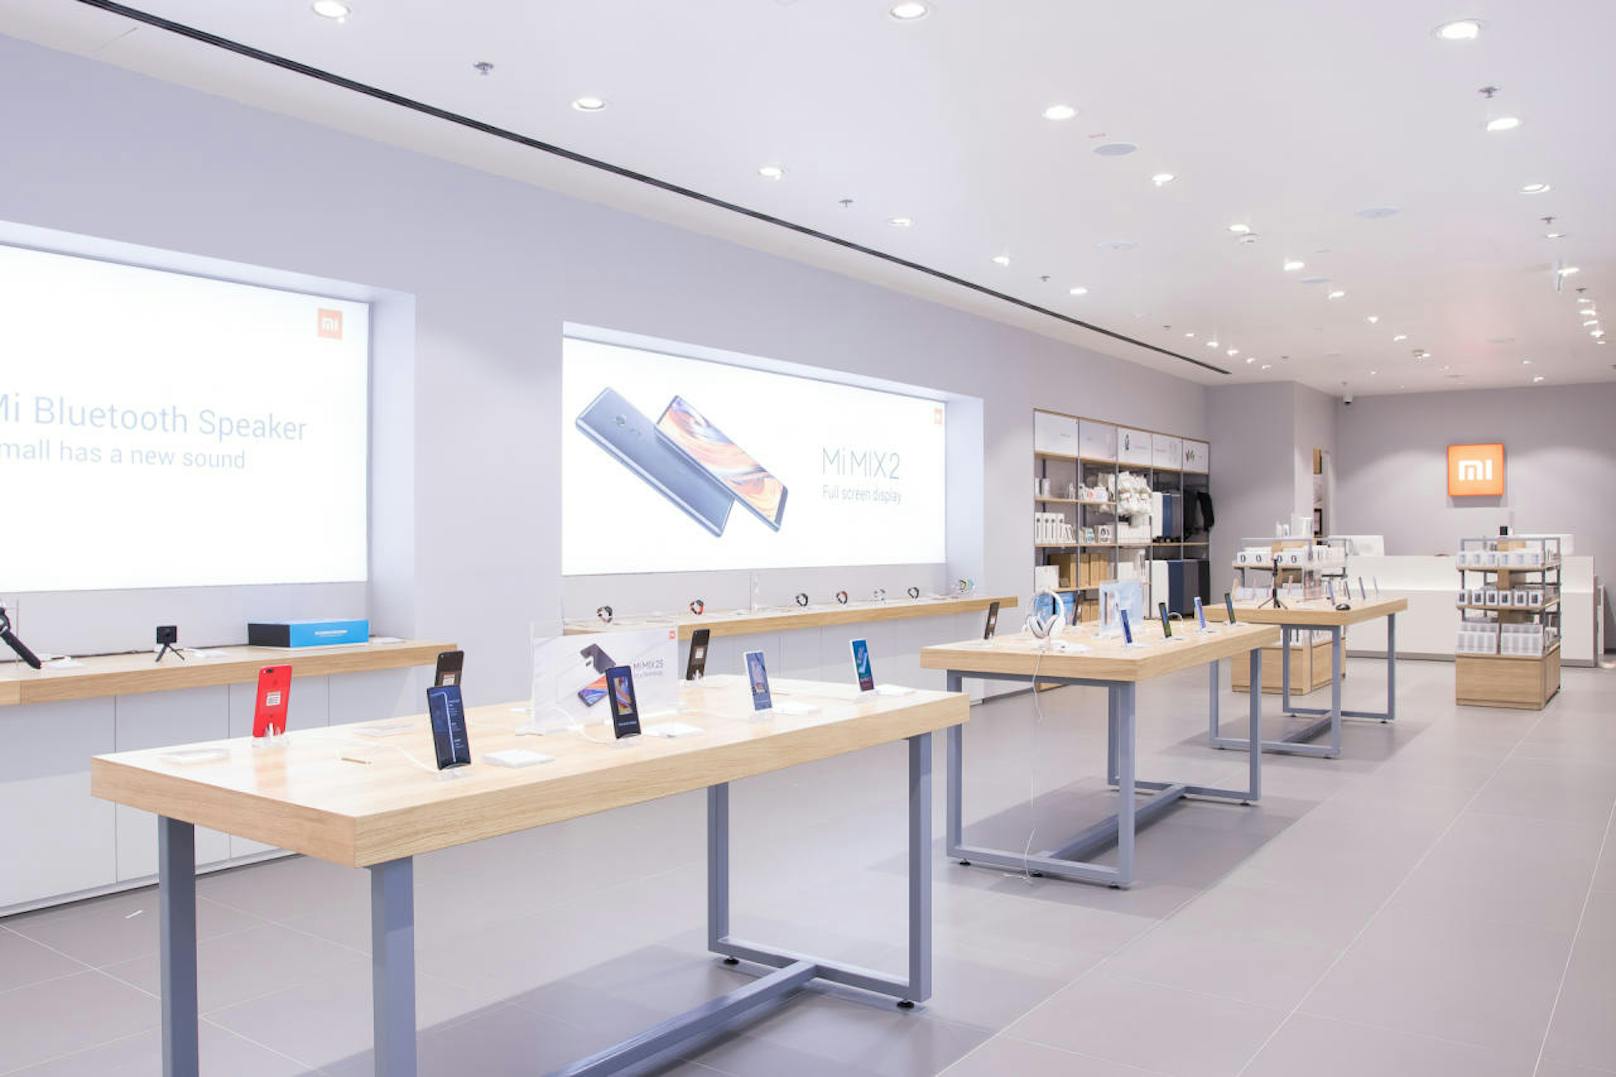 Xiaomi eröffnet in der Shopping City Süd ersten Store Österreichs (Bild: Xiaomi/Mirna Arapovic)